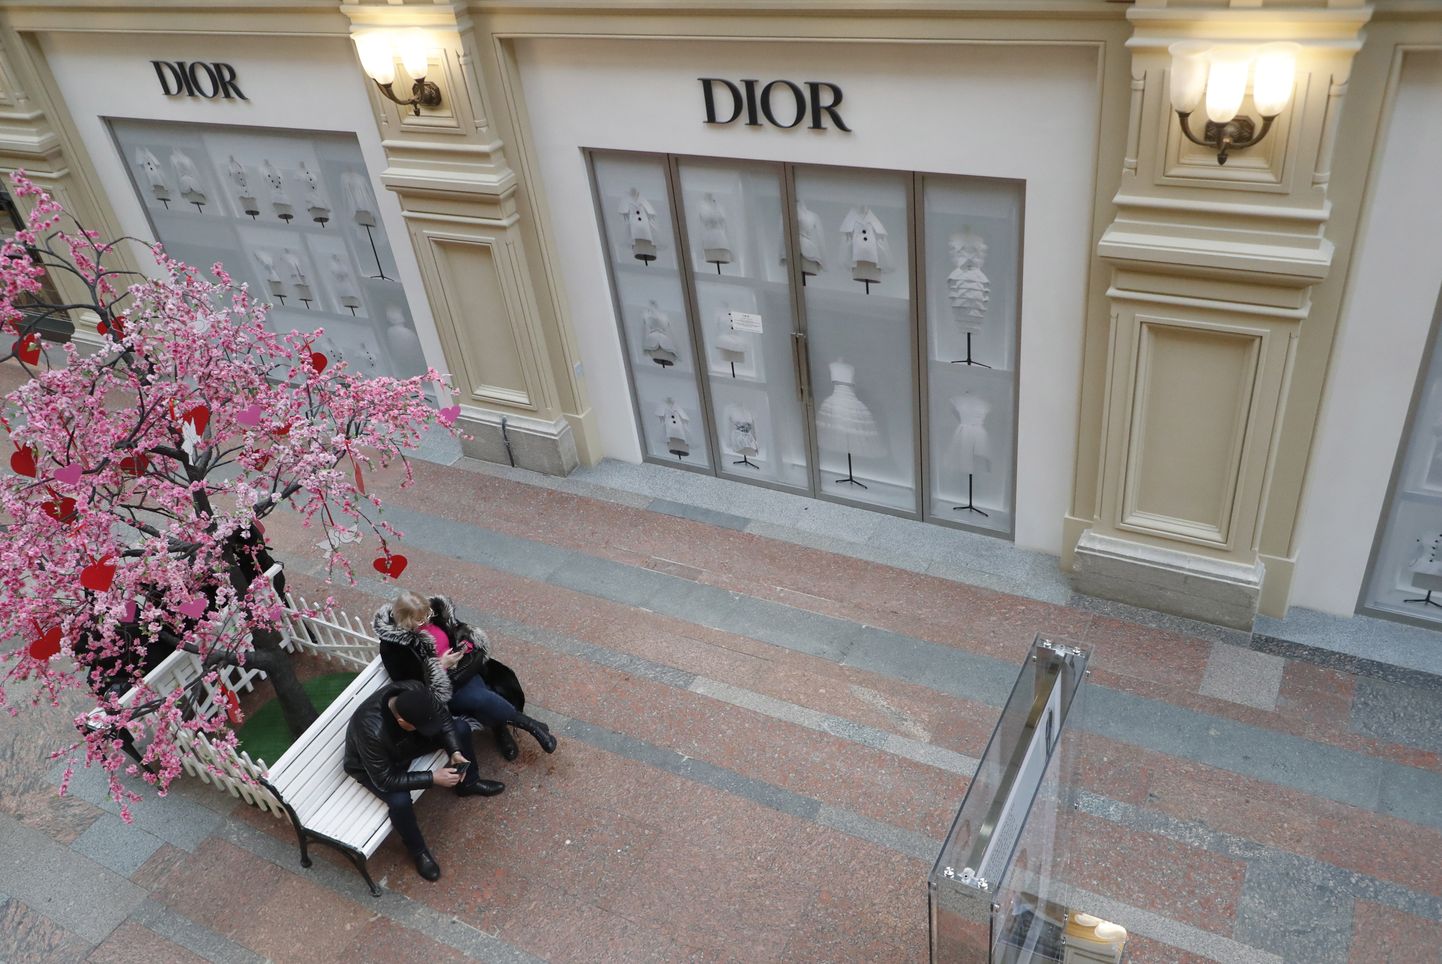 Suletud Diori poed Moskva kaubanduskeskuses 14. veebruaril 2023.